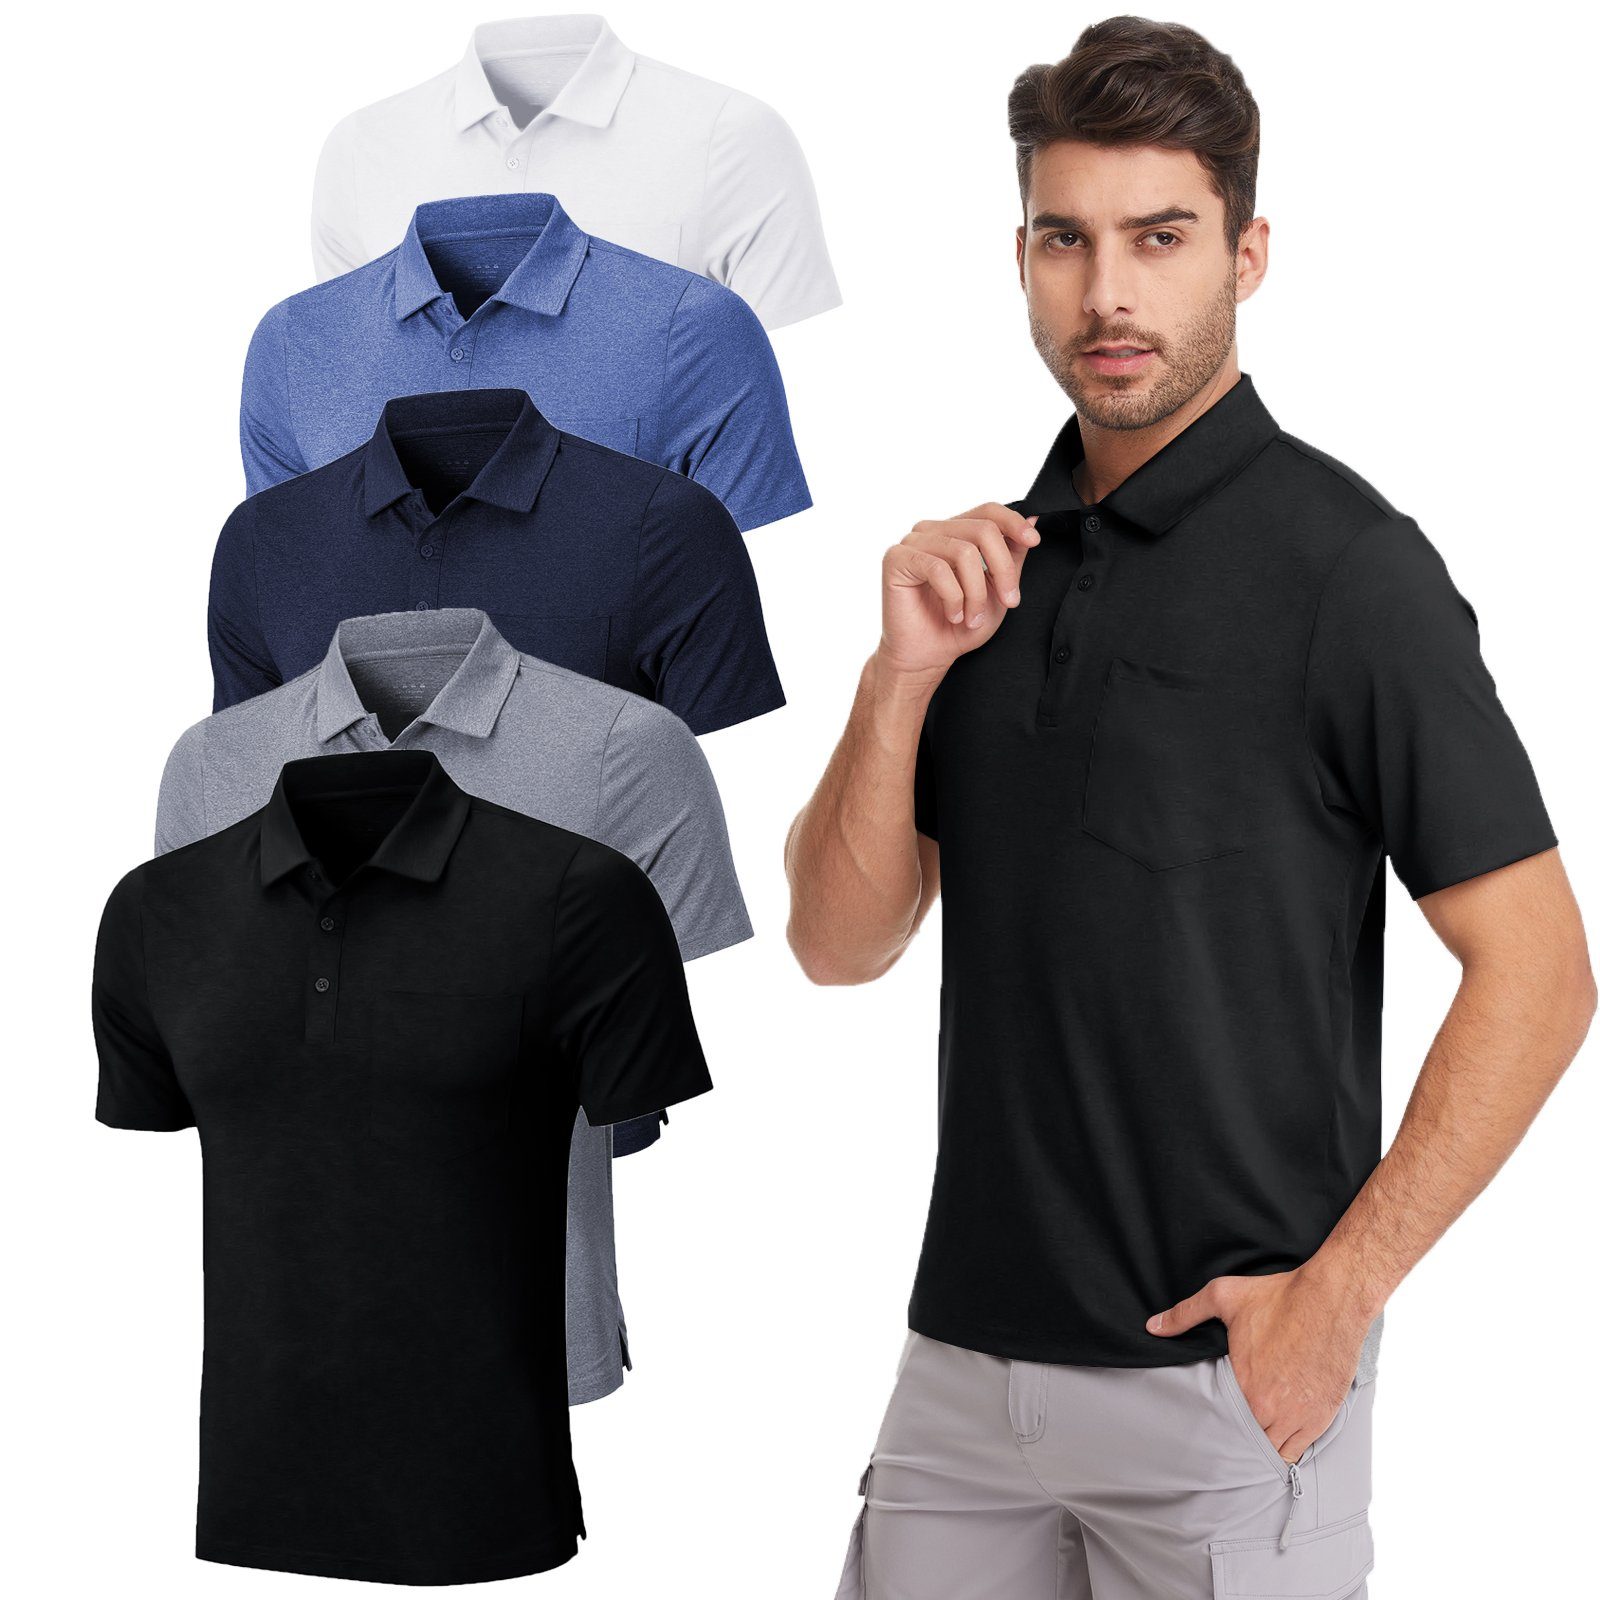 Poloshirt Classic Herren Polohemd Tee Atmungsaktiv T-Shirt, Grau Button-Down-Kragen, MEETYOO Casual, Unifarben, Hemd) Poloshirt (Kurzarm